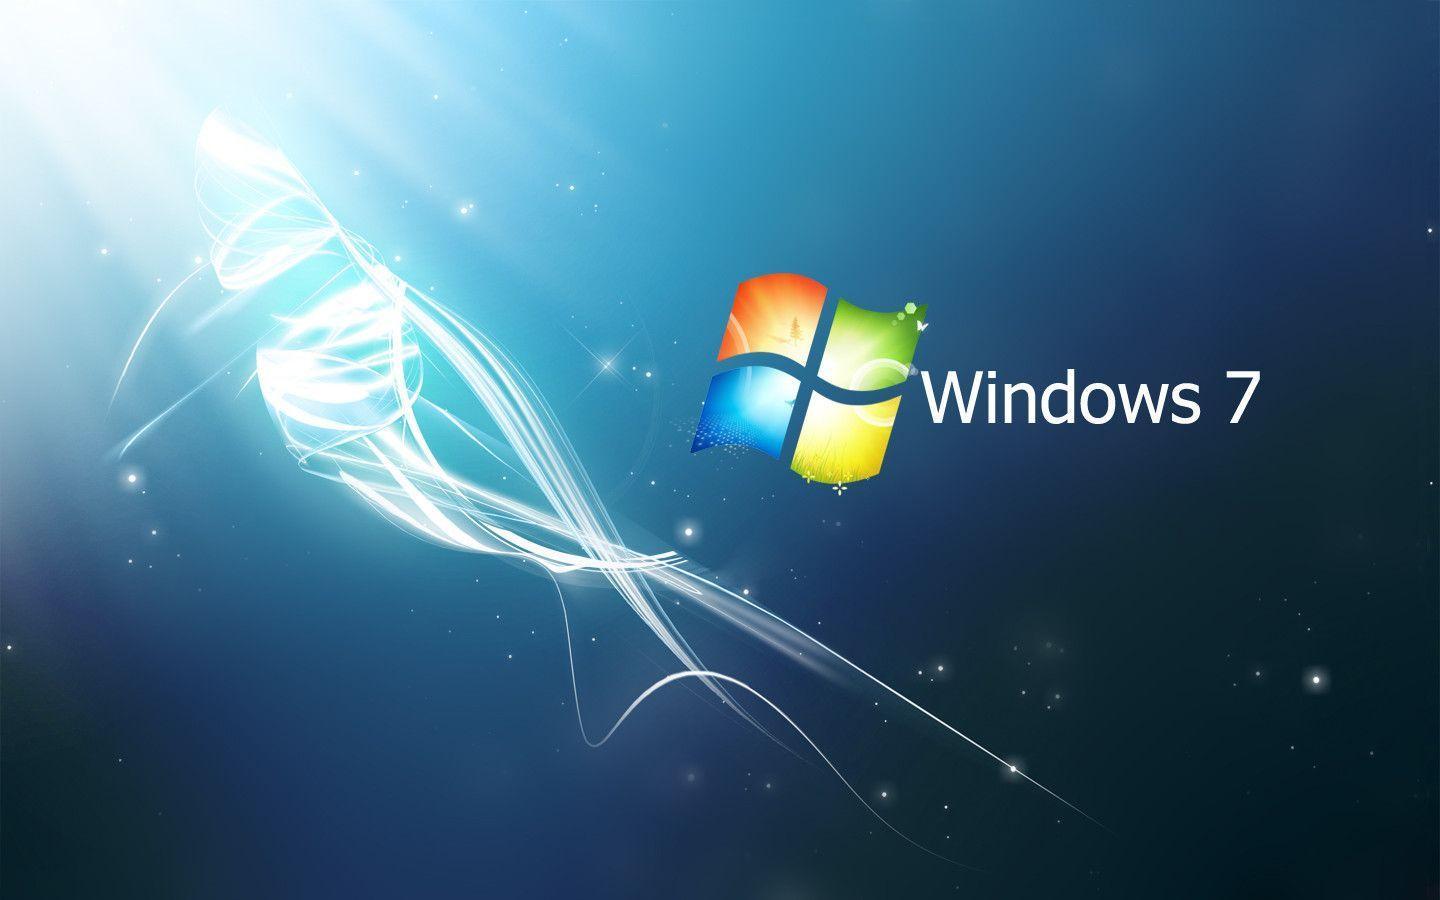 【今天整了啥活】0808 Windows 7坚挺 《英雄联盟》可能受到牵连